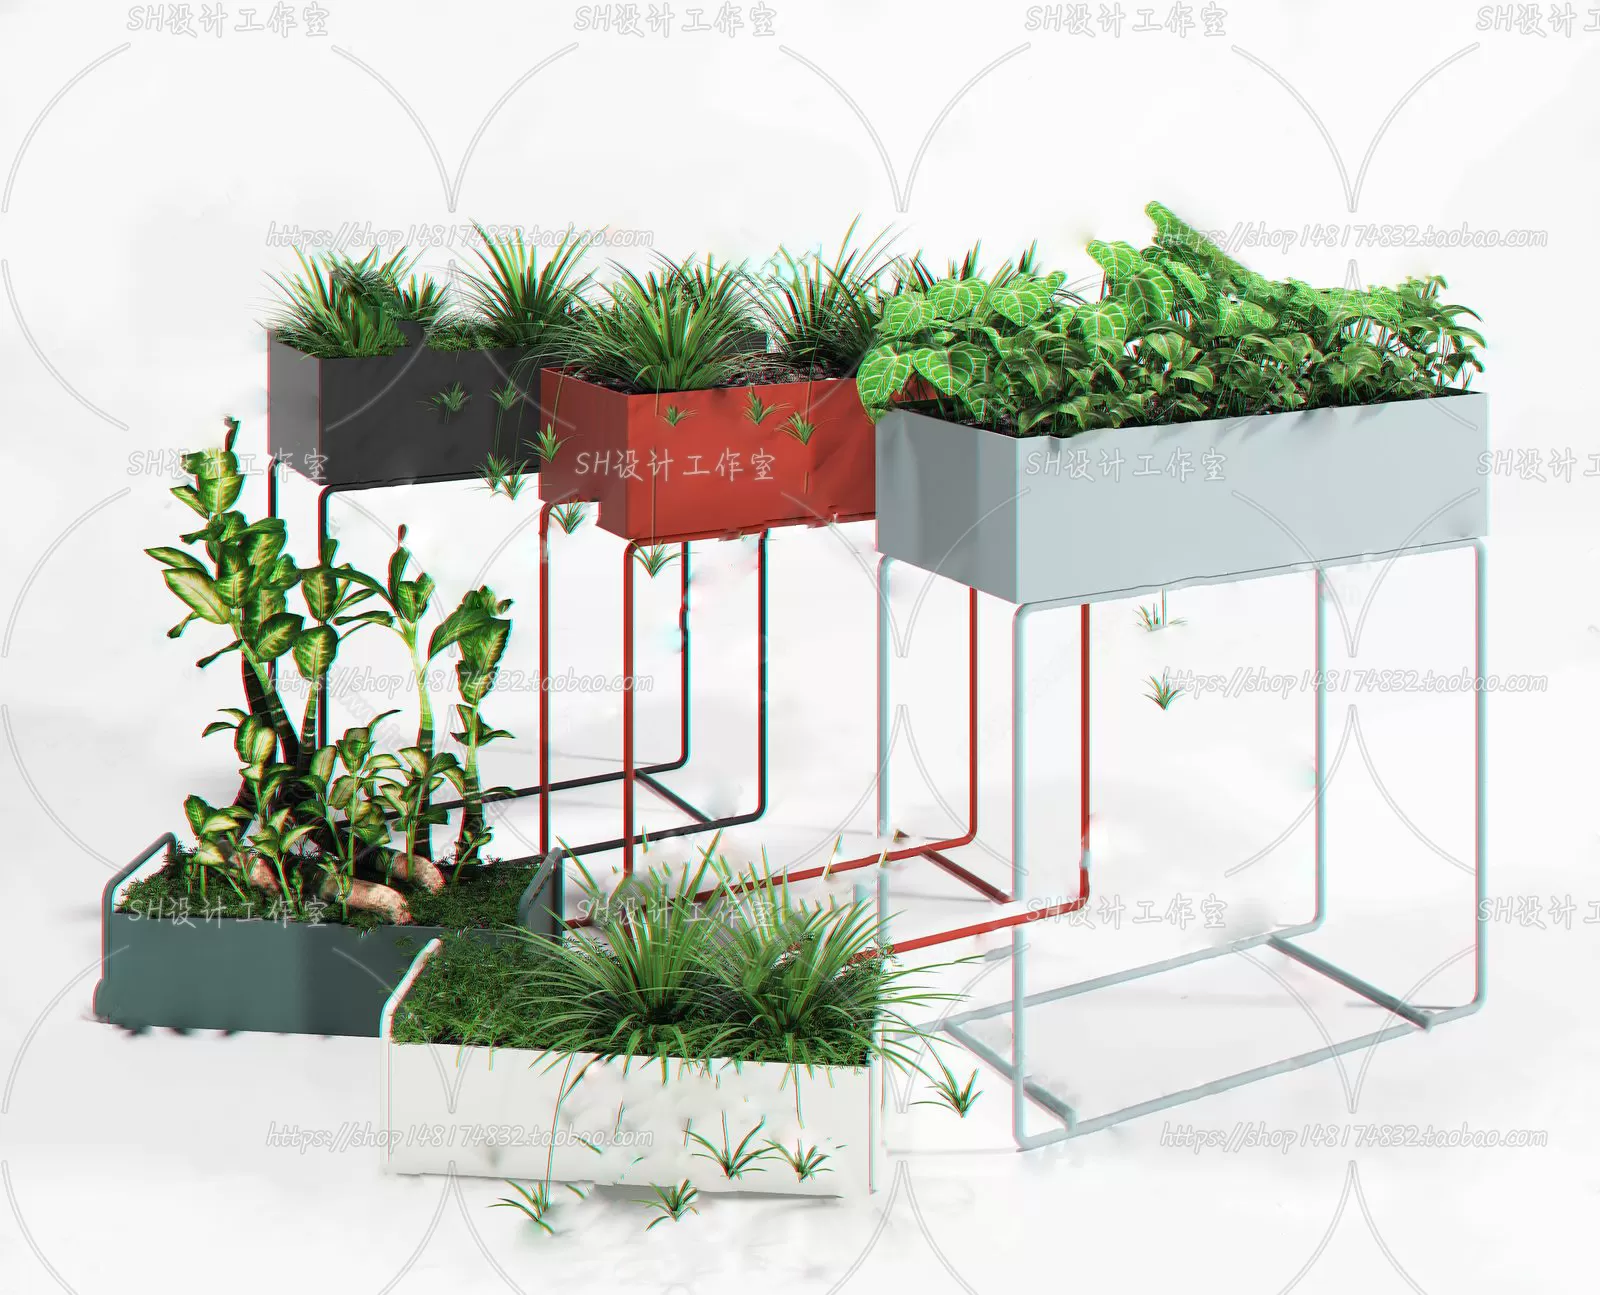 PLANT 3D MODELS – 086